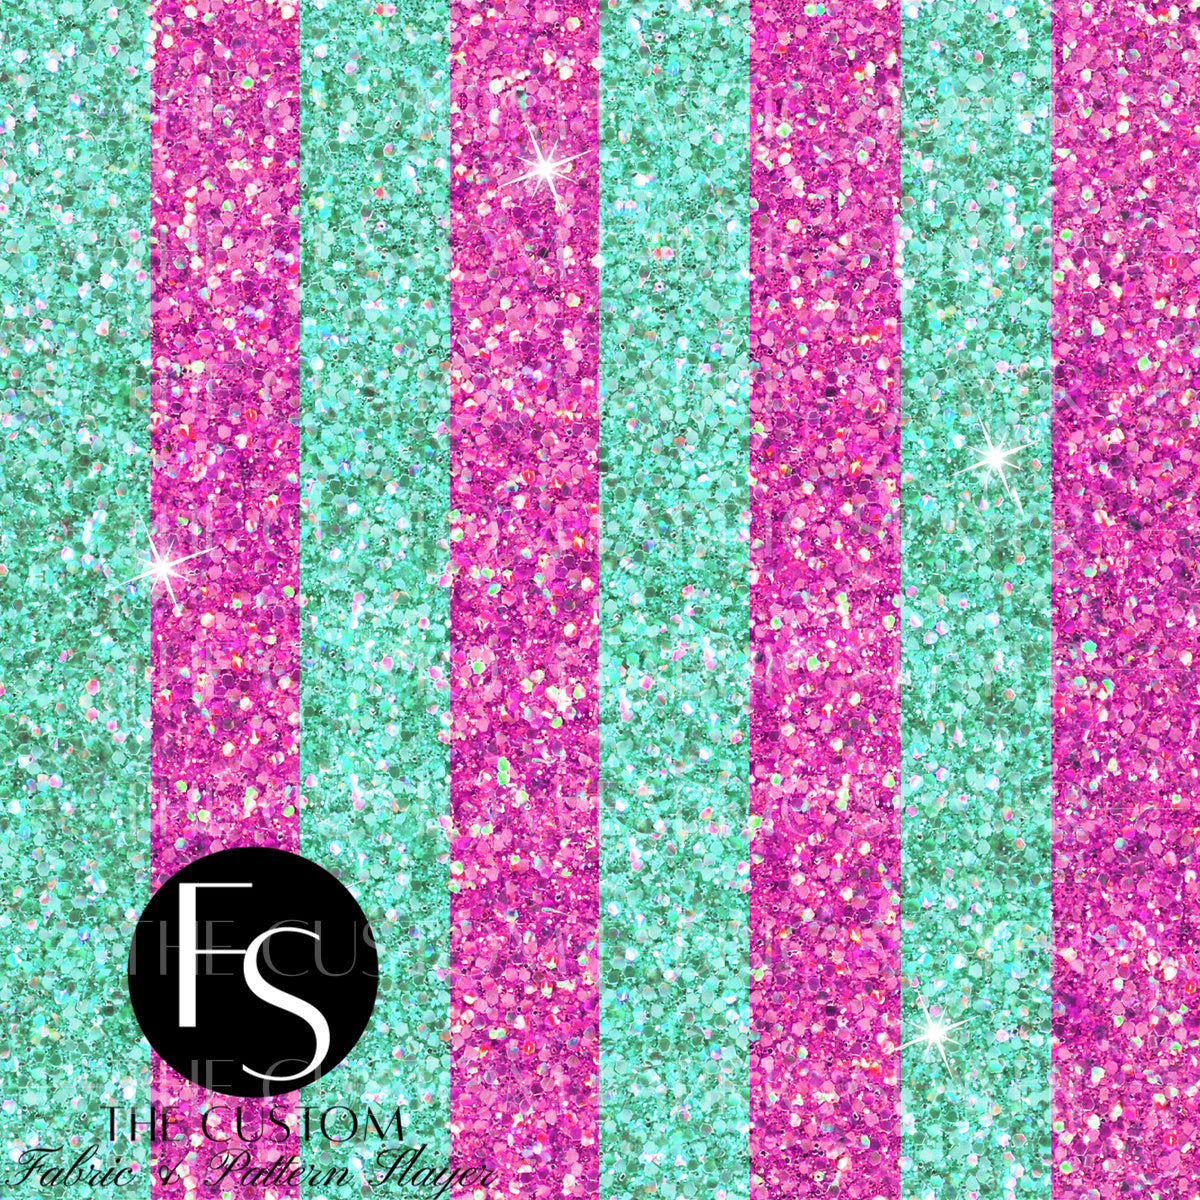 Carnival Stripes Digital Glitter Texture